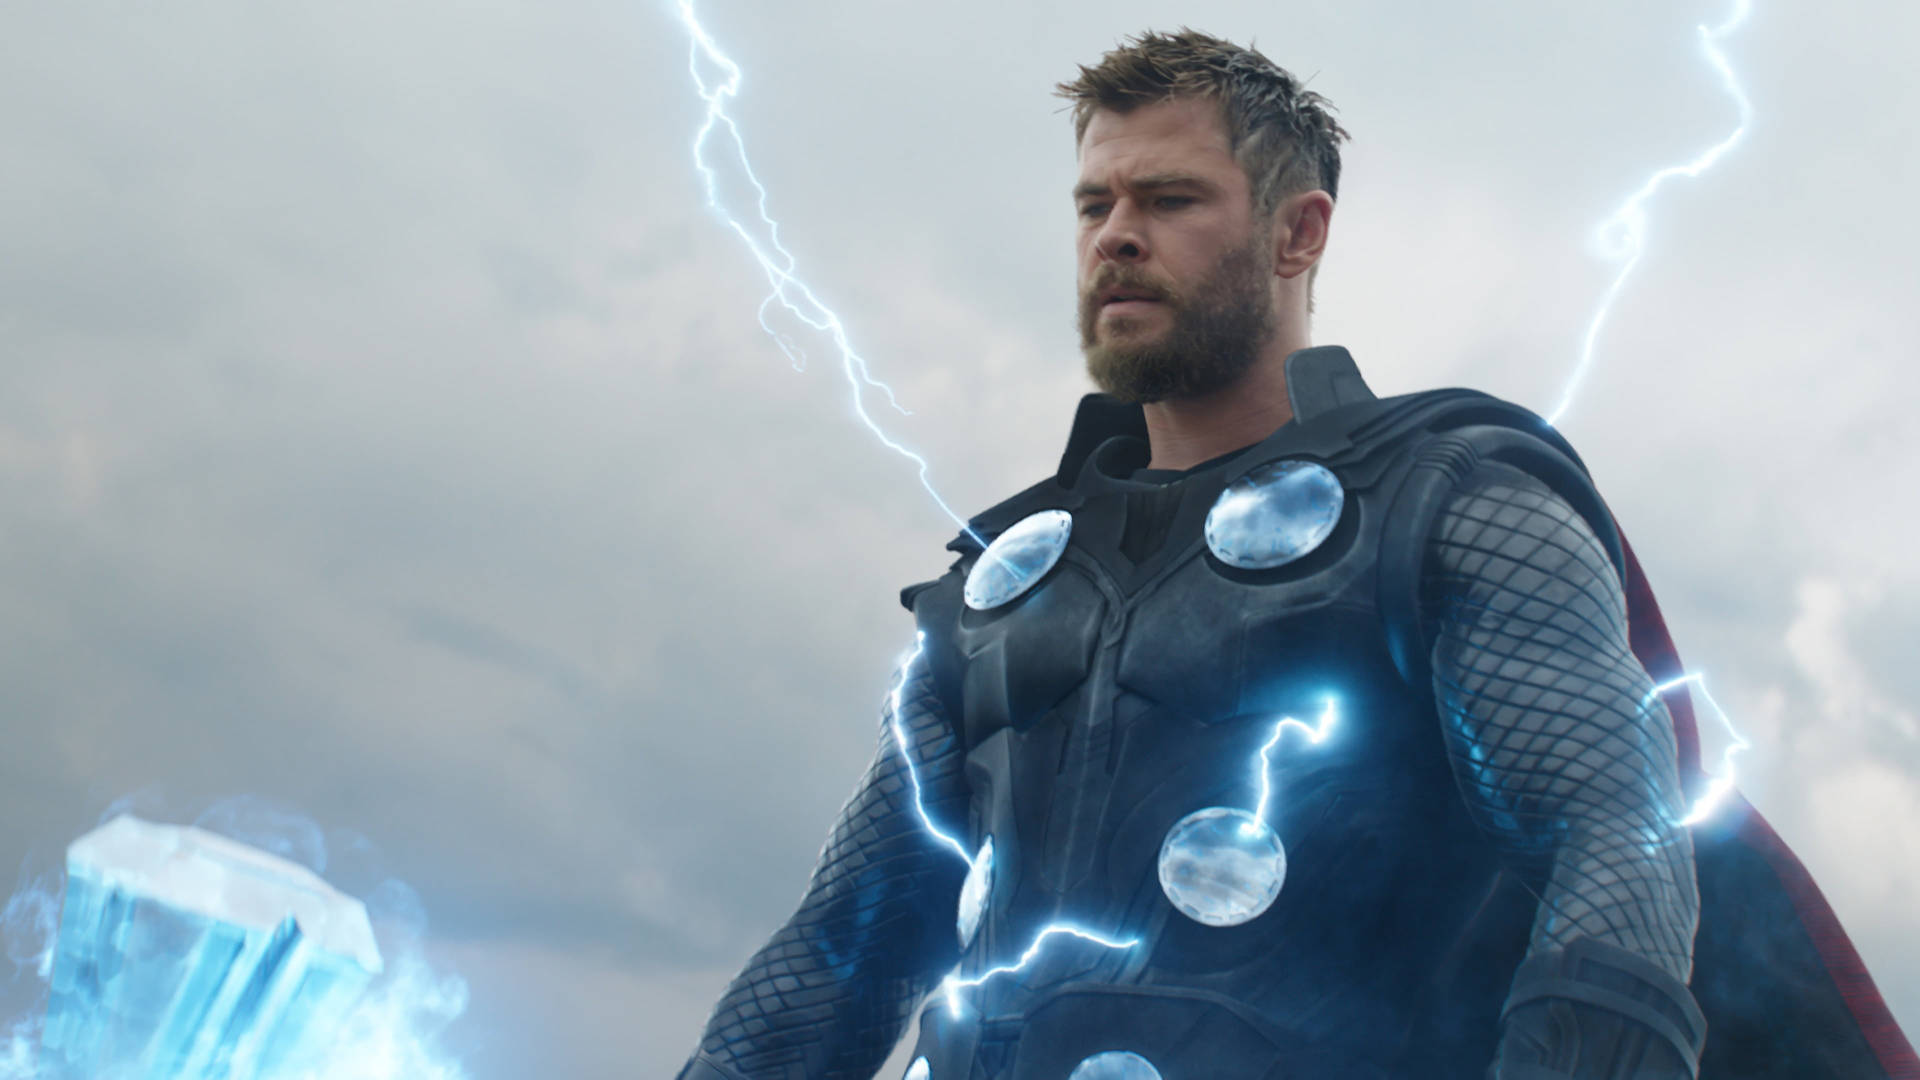 Thunder God In 4k - Thor From Avengers Endgame Background